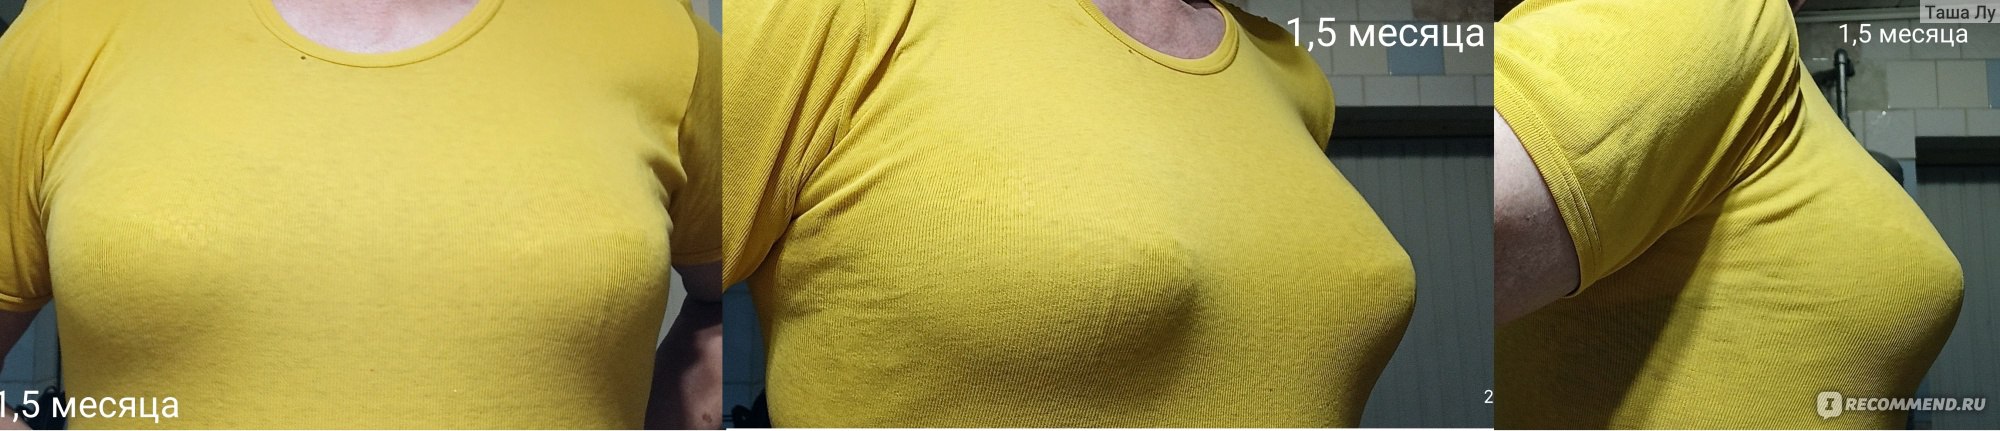 Липофилинг груди фото